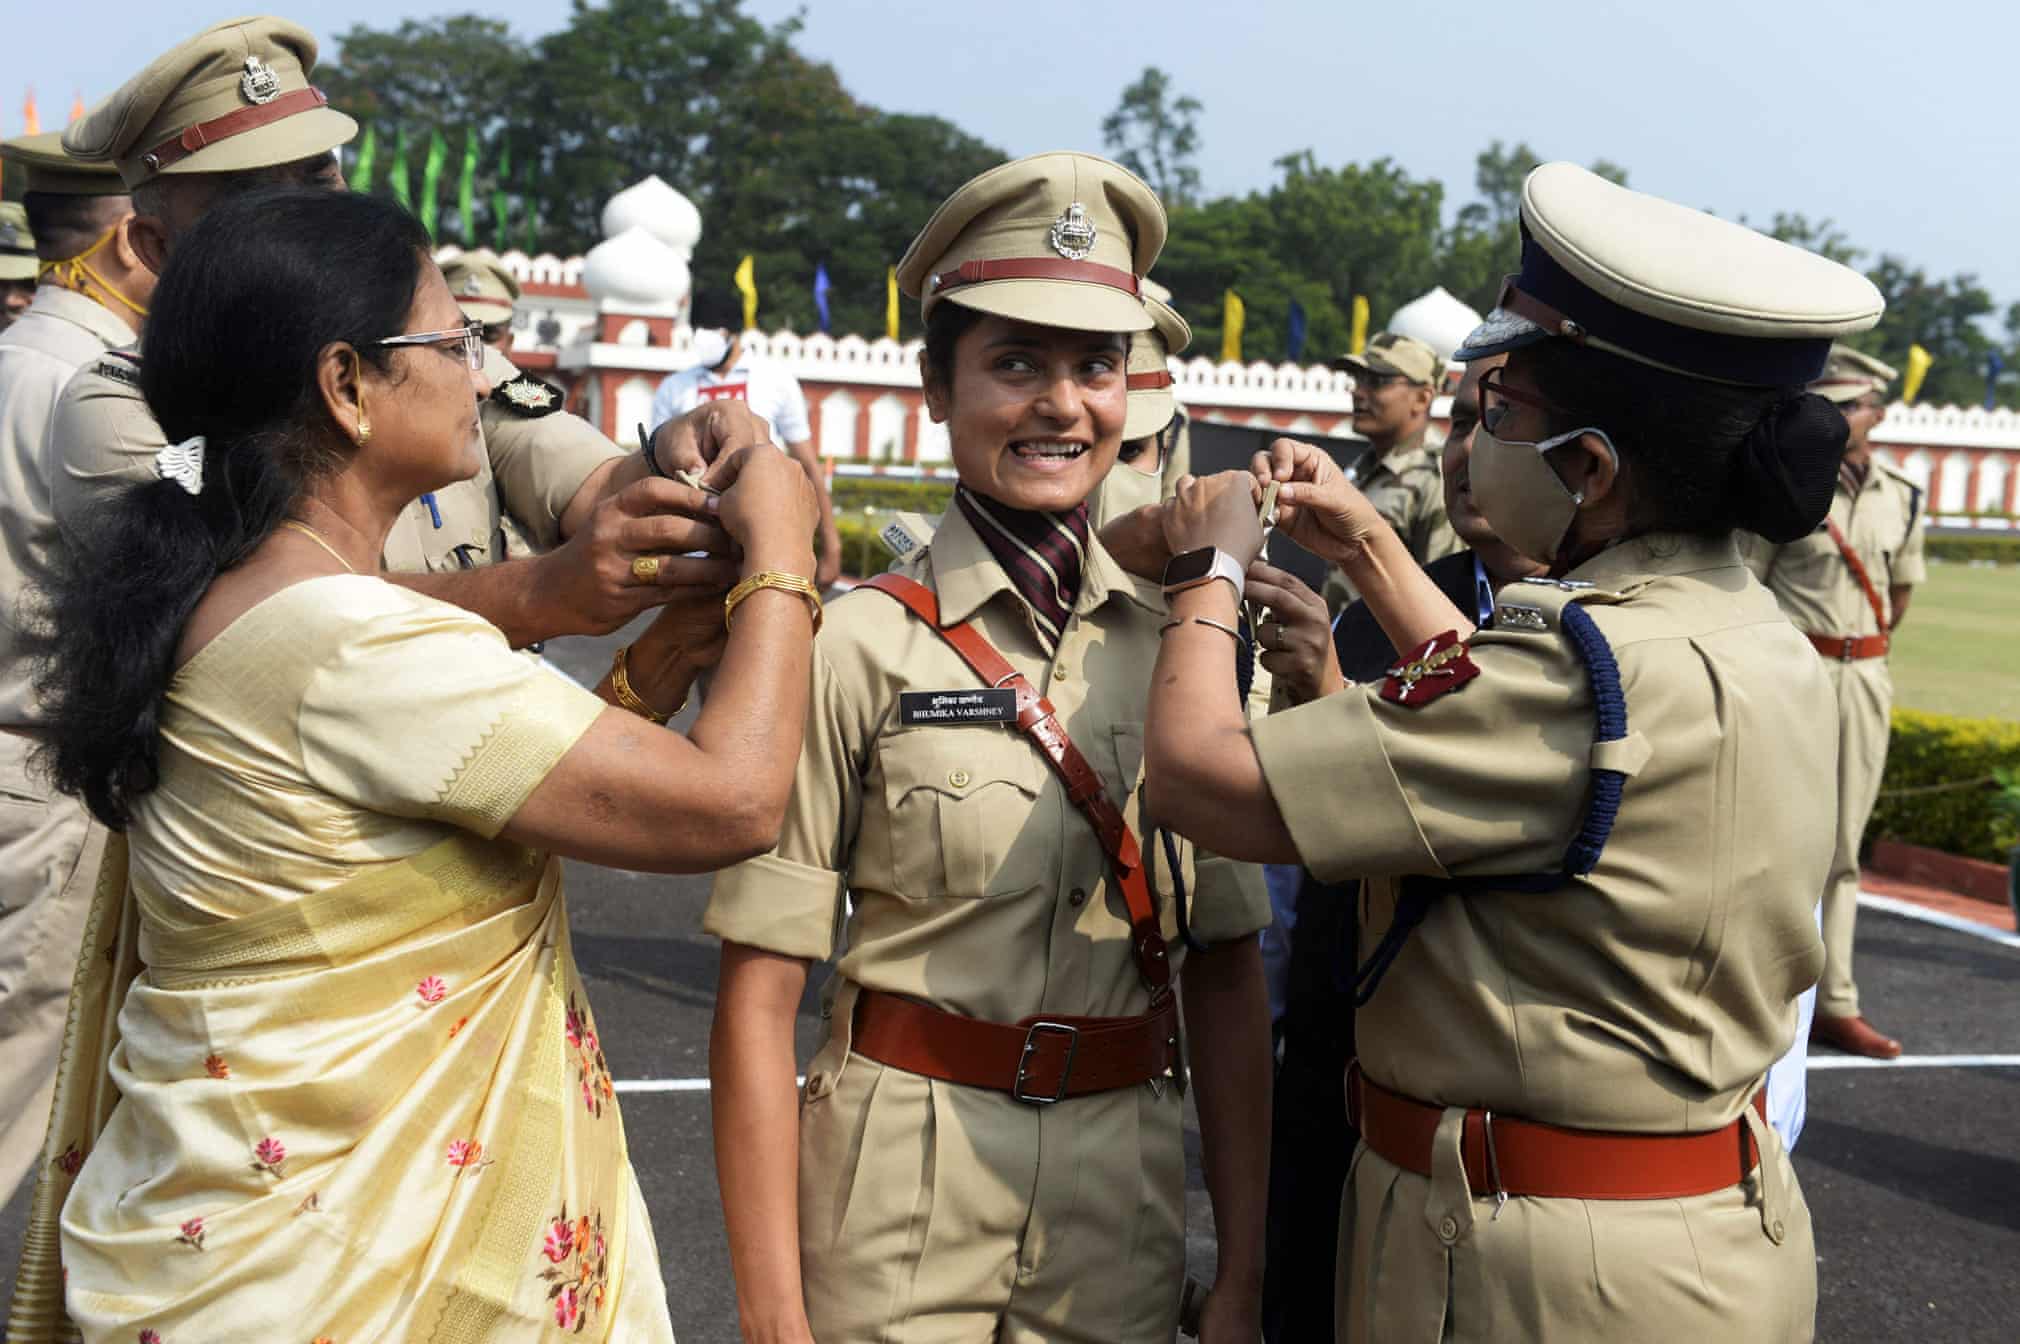 شیطنت نیروی زن هندی هنگام چسباندن ستاره روی لباسش+عکس